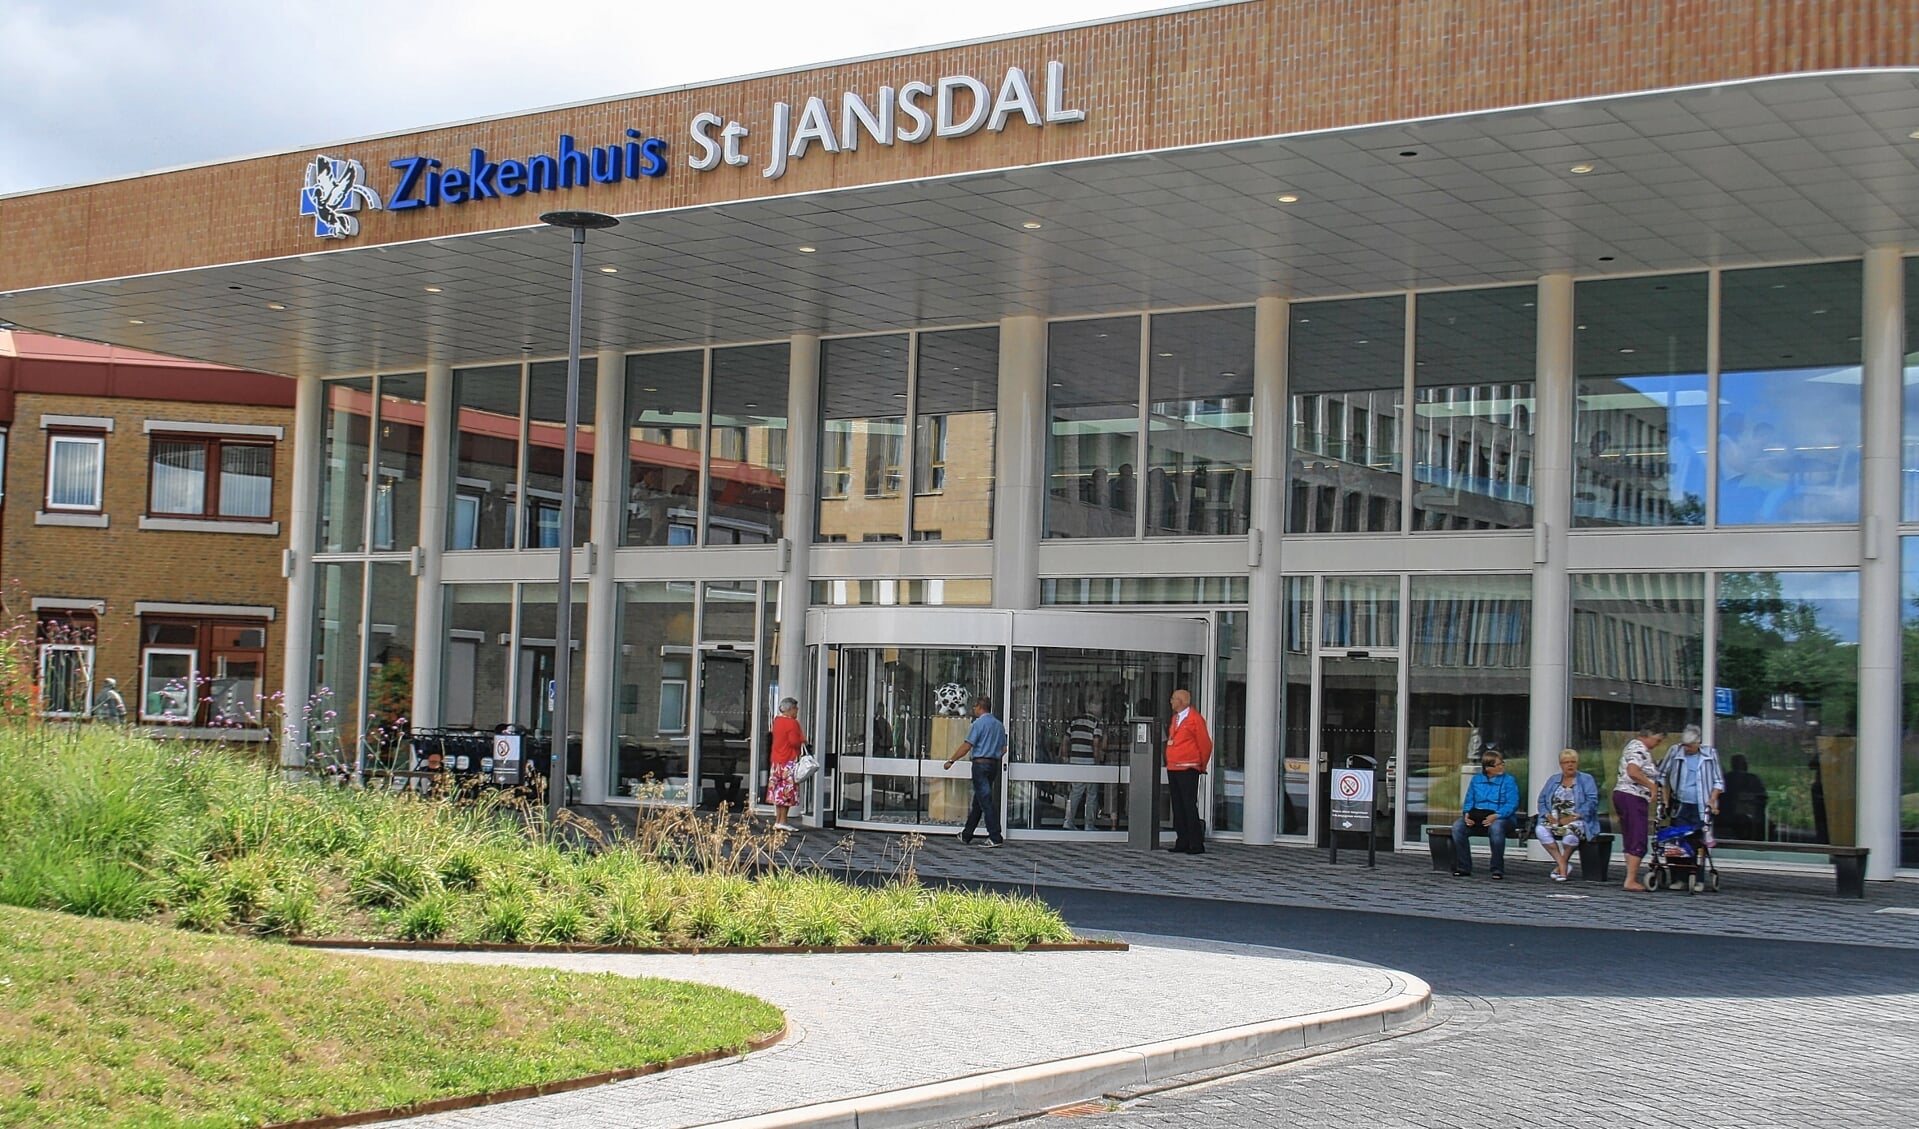 De entree van ziekenhuis Sint Jansdal in Harderwijk.